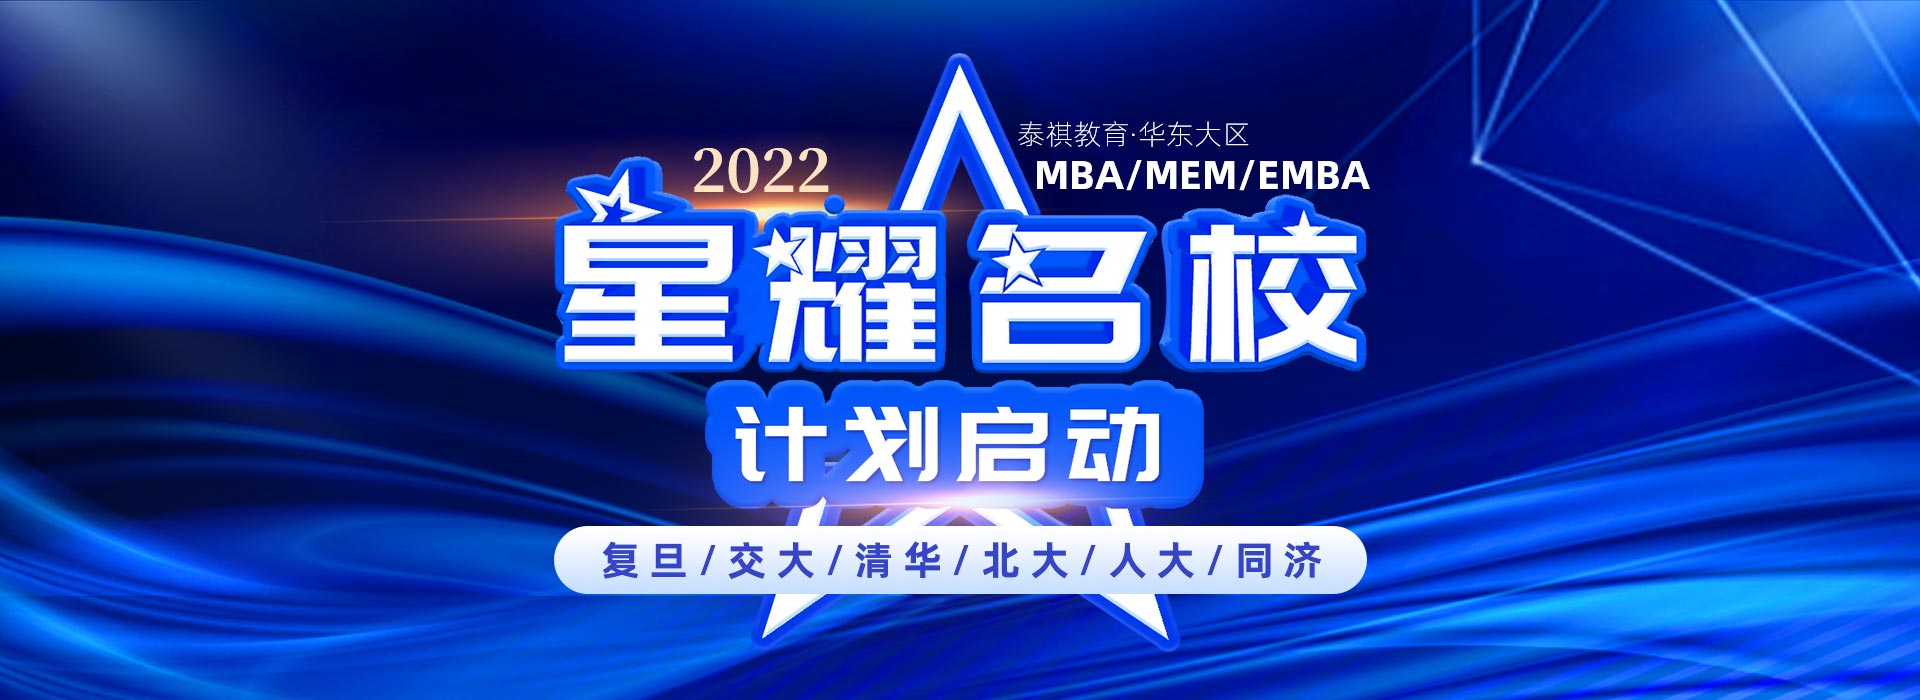 清华 北大 人大MBA EMBA MEM 泰祺星耀名校计划启动